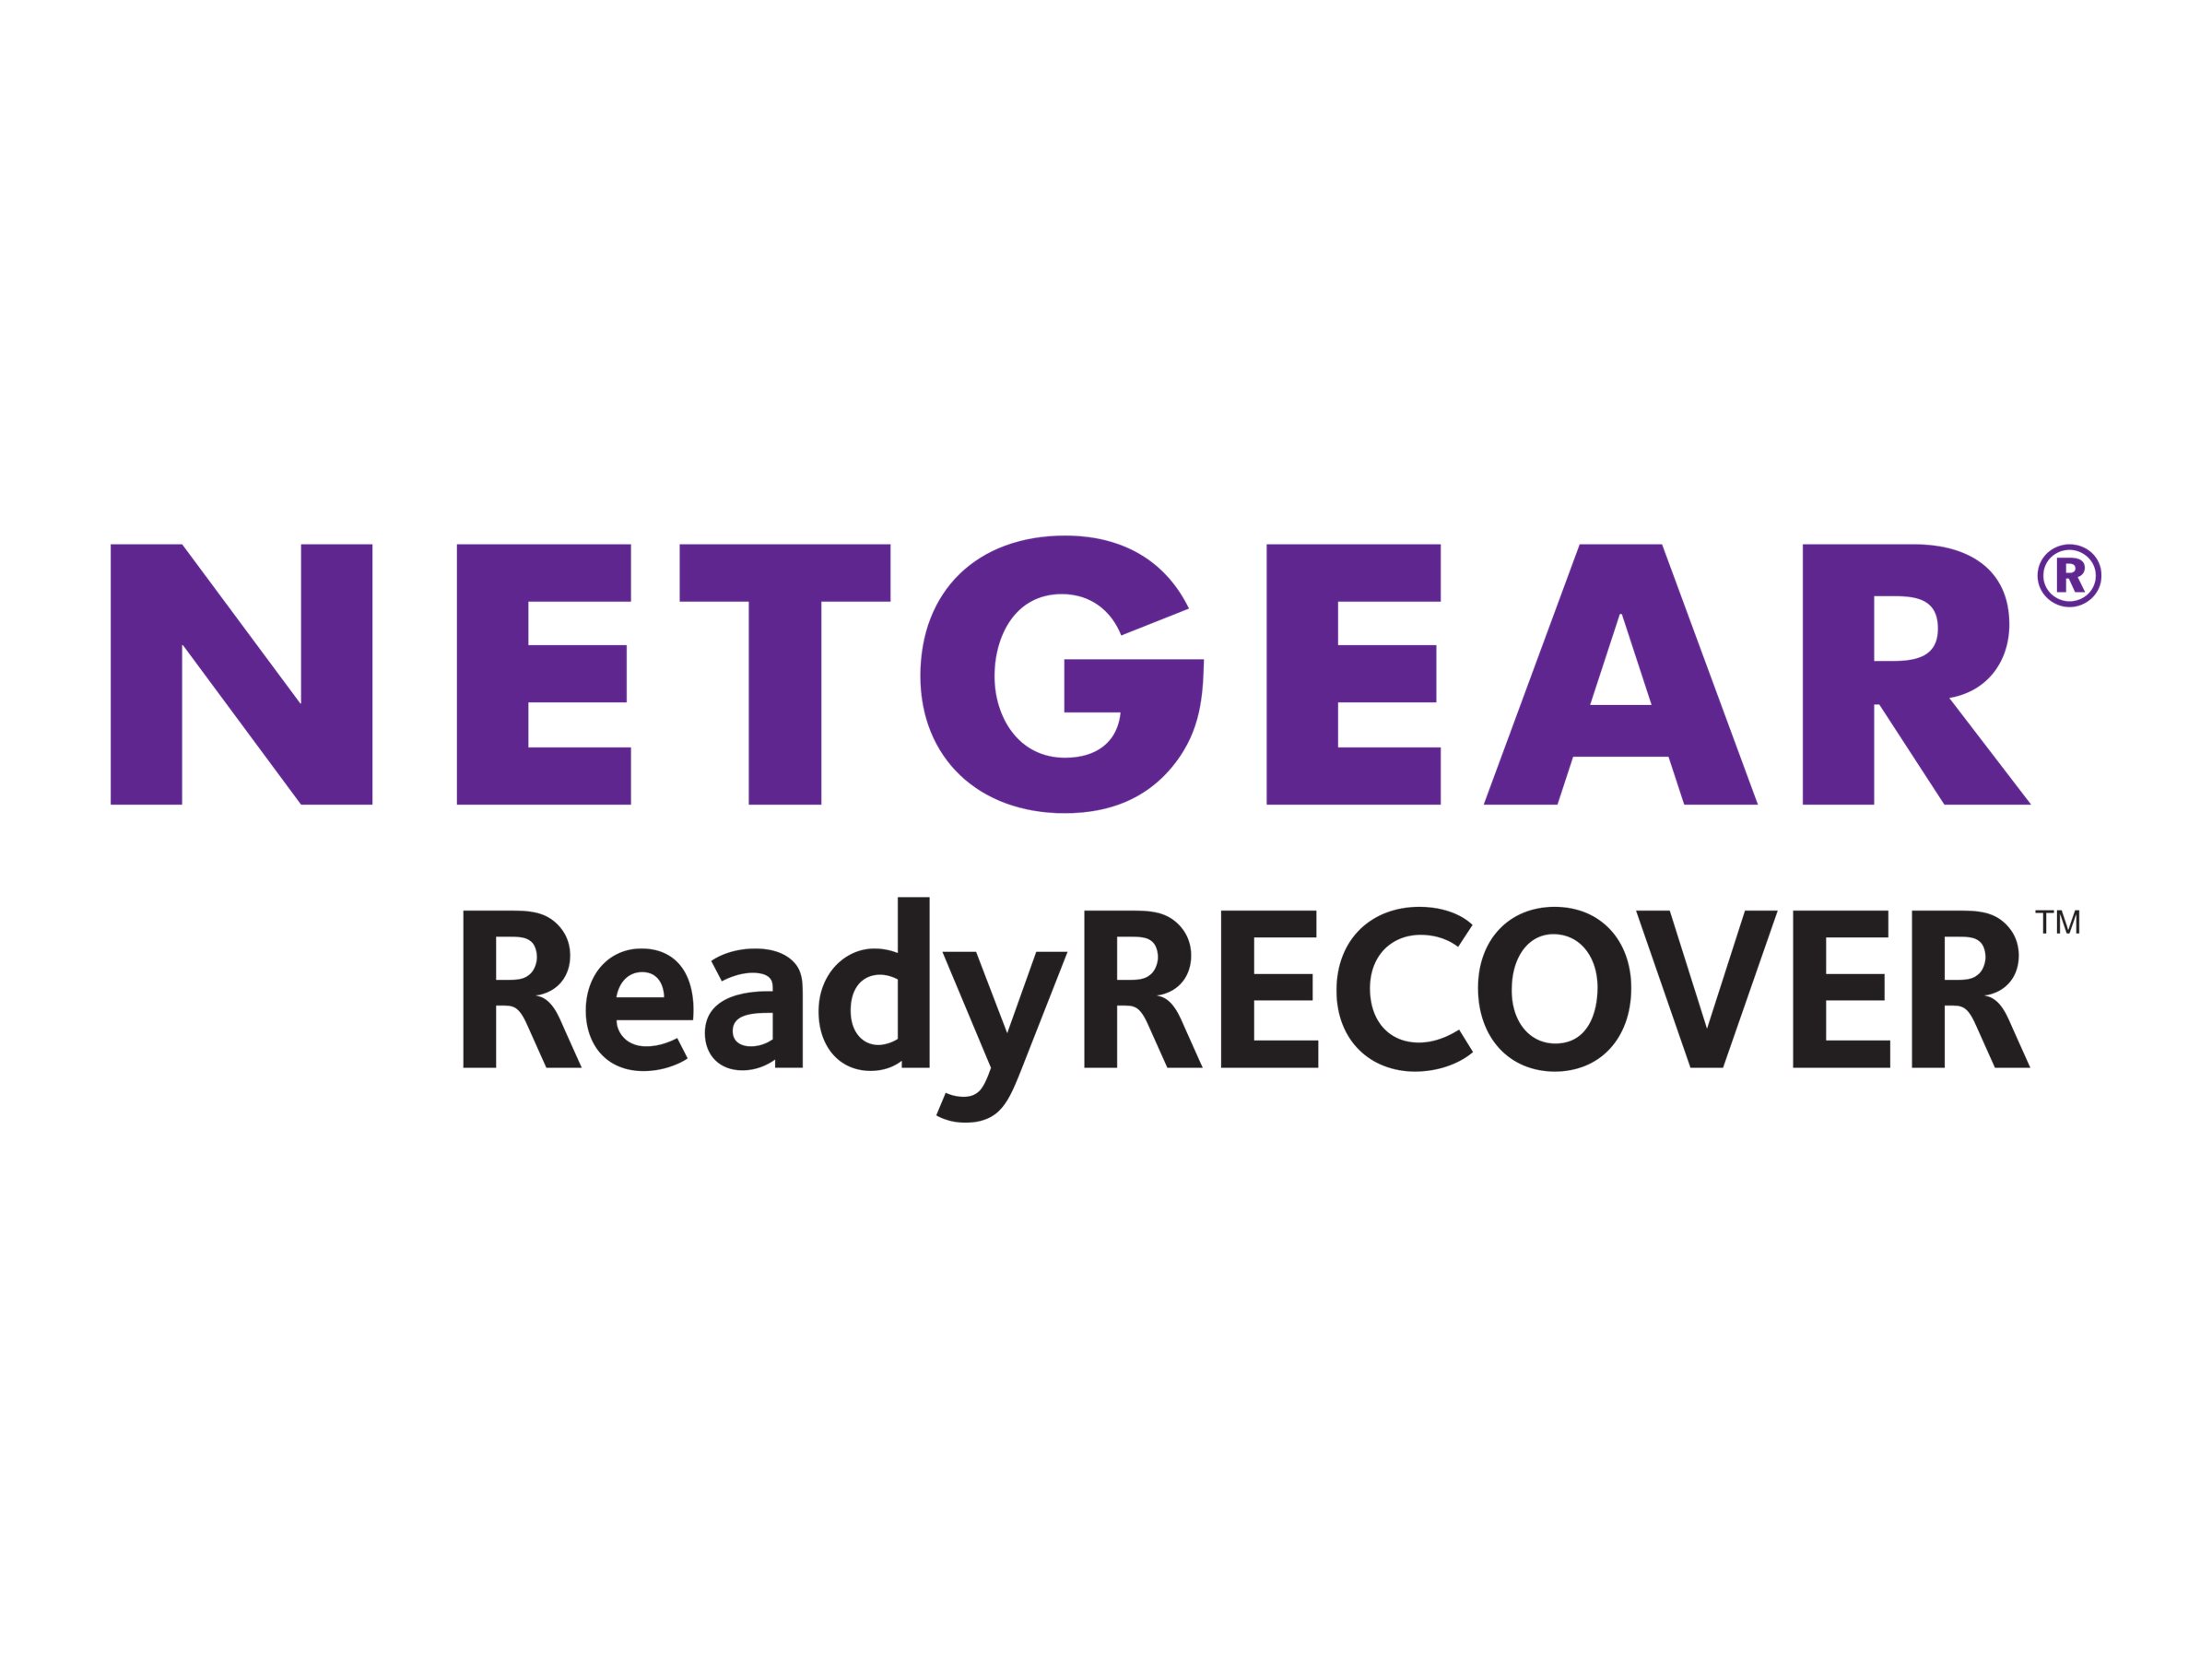 NETGEAR ReadyRECOVER - Lizenz - 1 physischer Server - Win